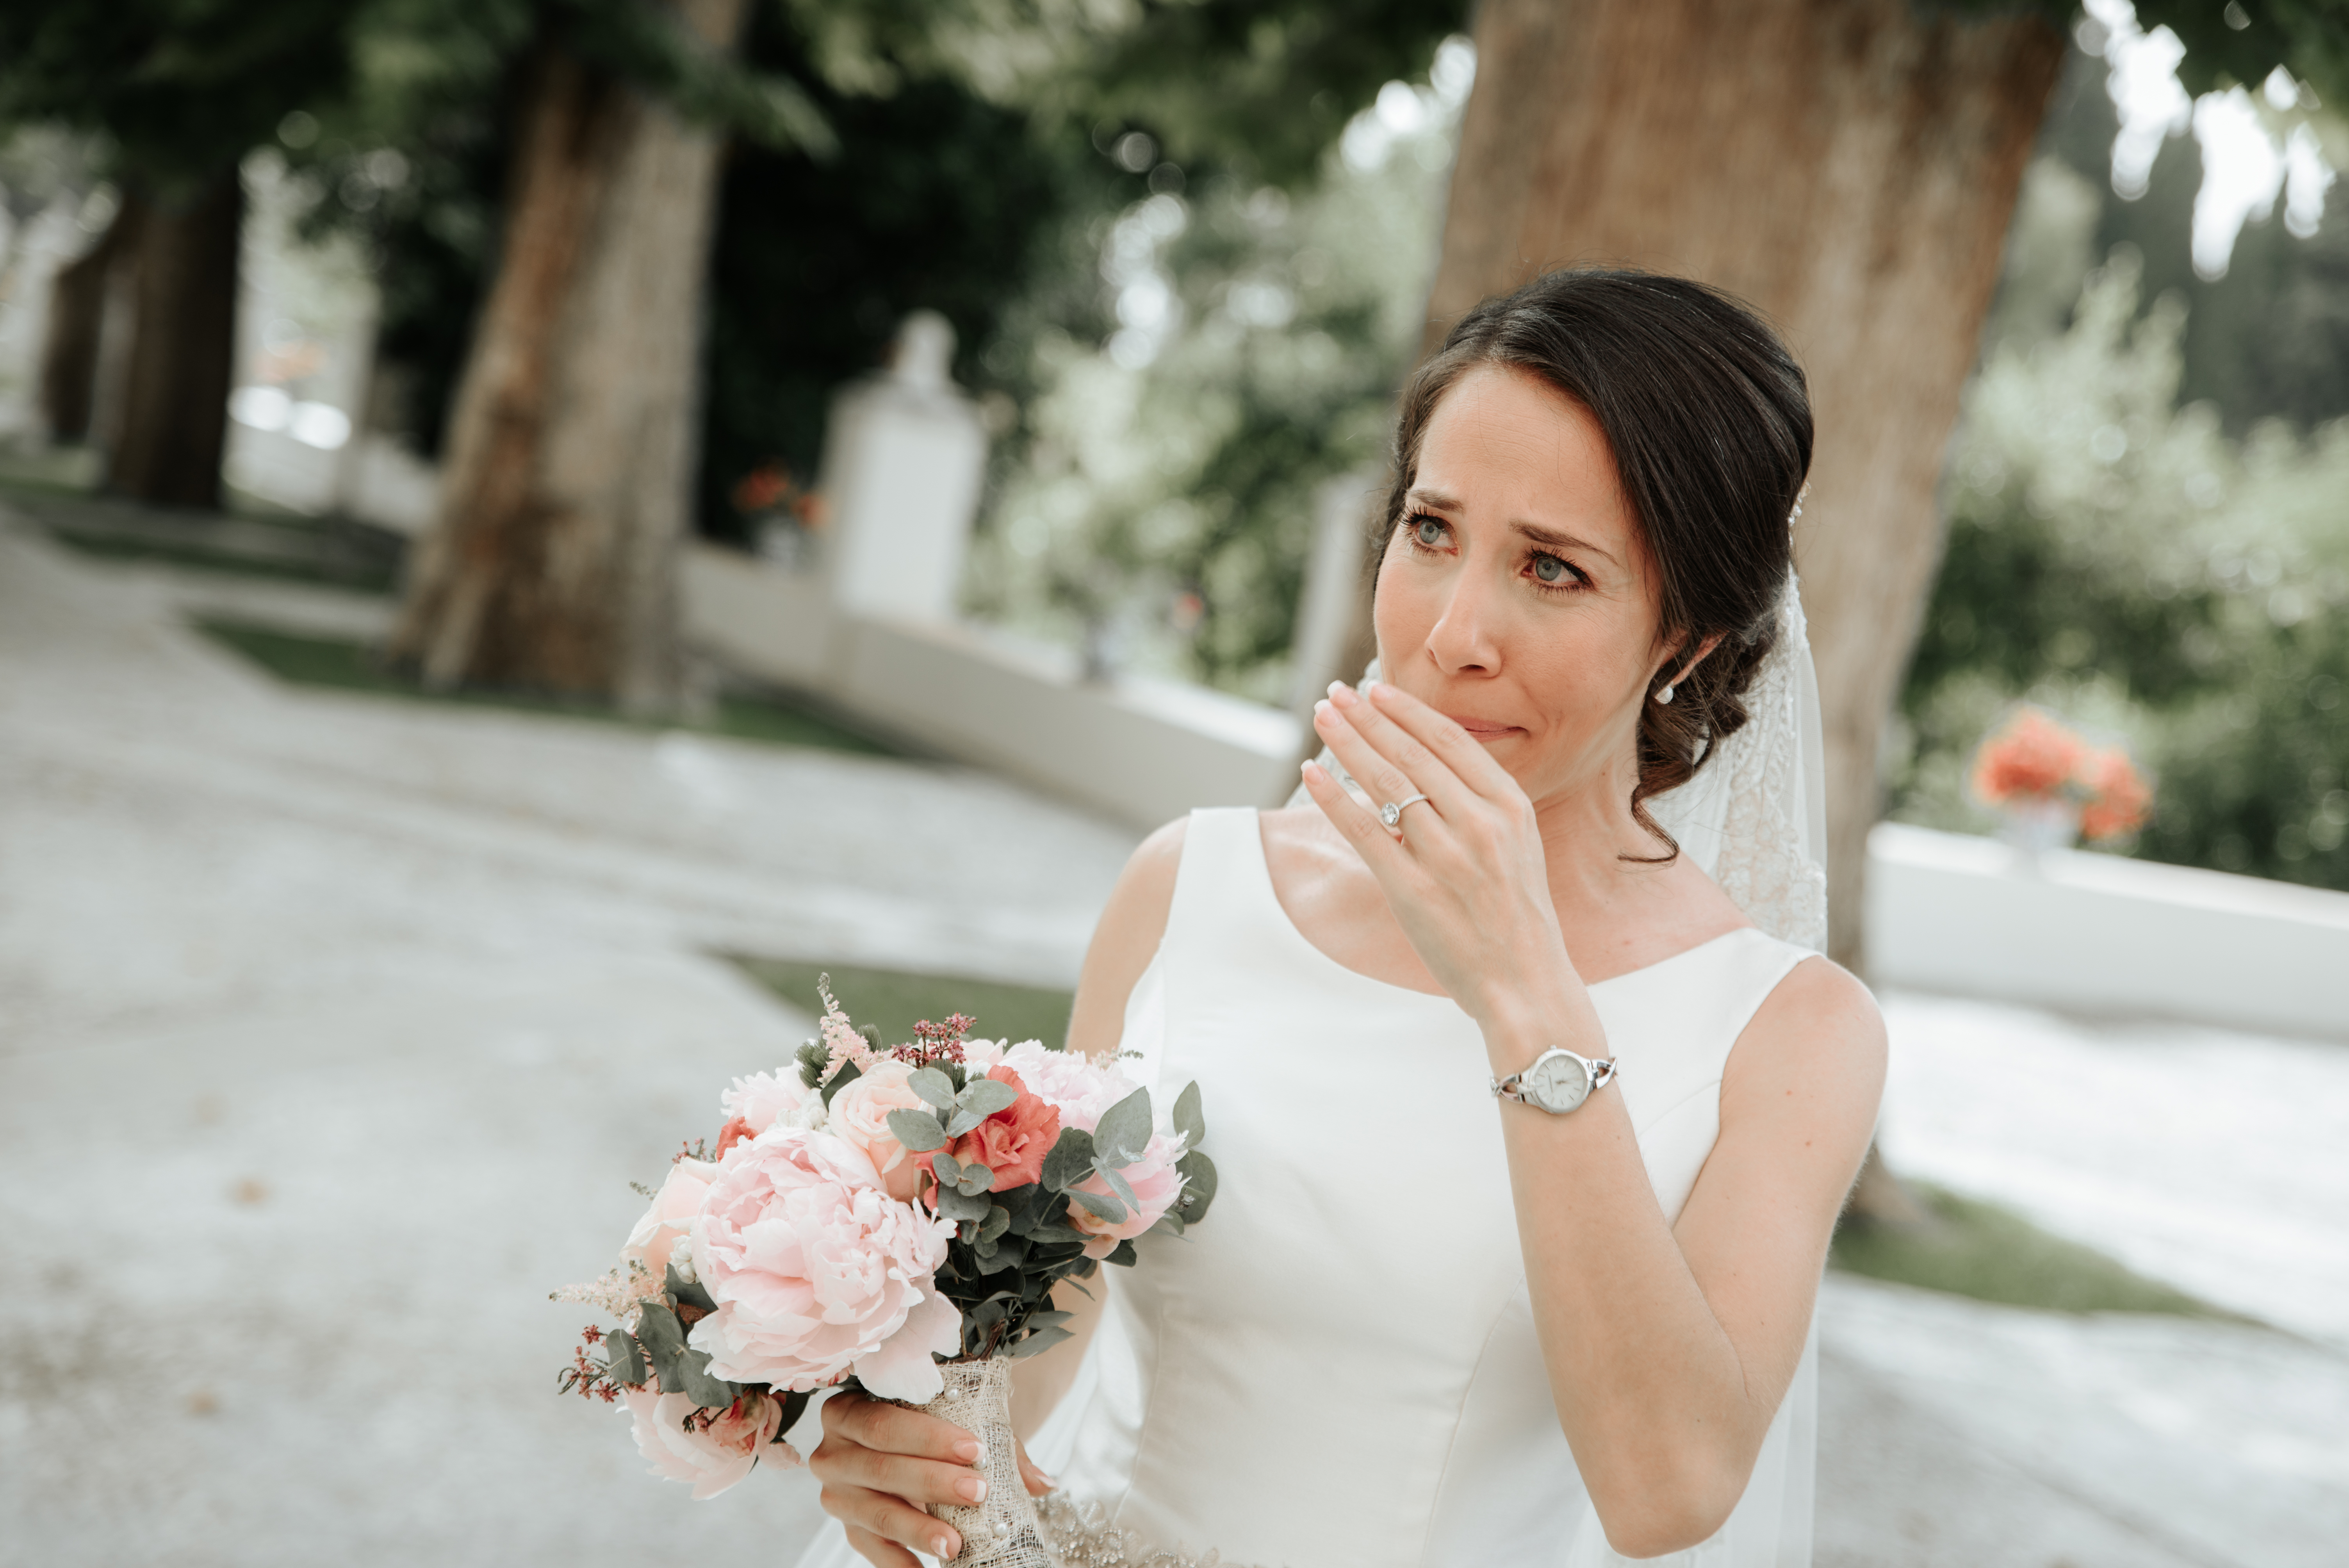 Une mariée en pleine crise émotionnelle | Source : Shutterstock